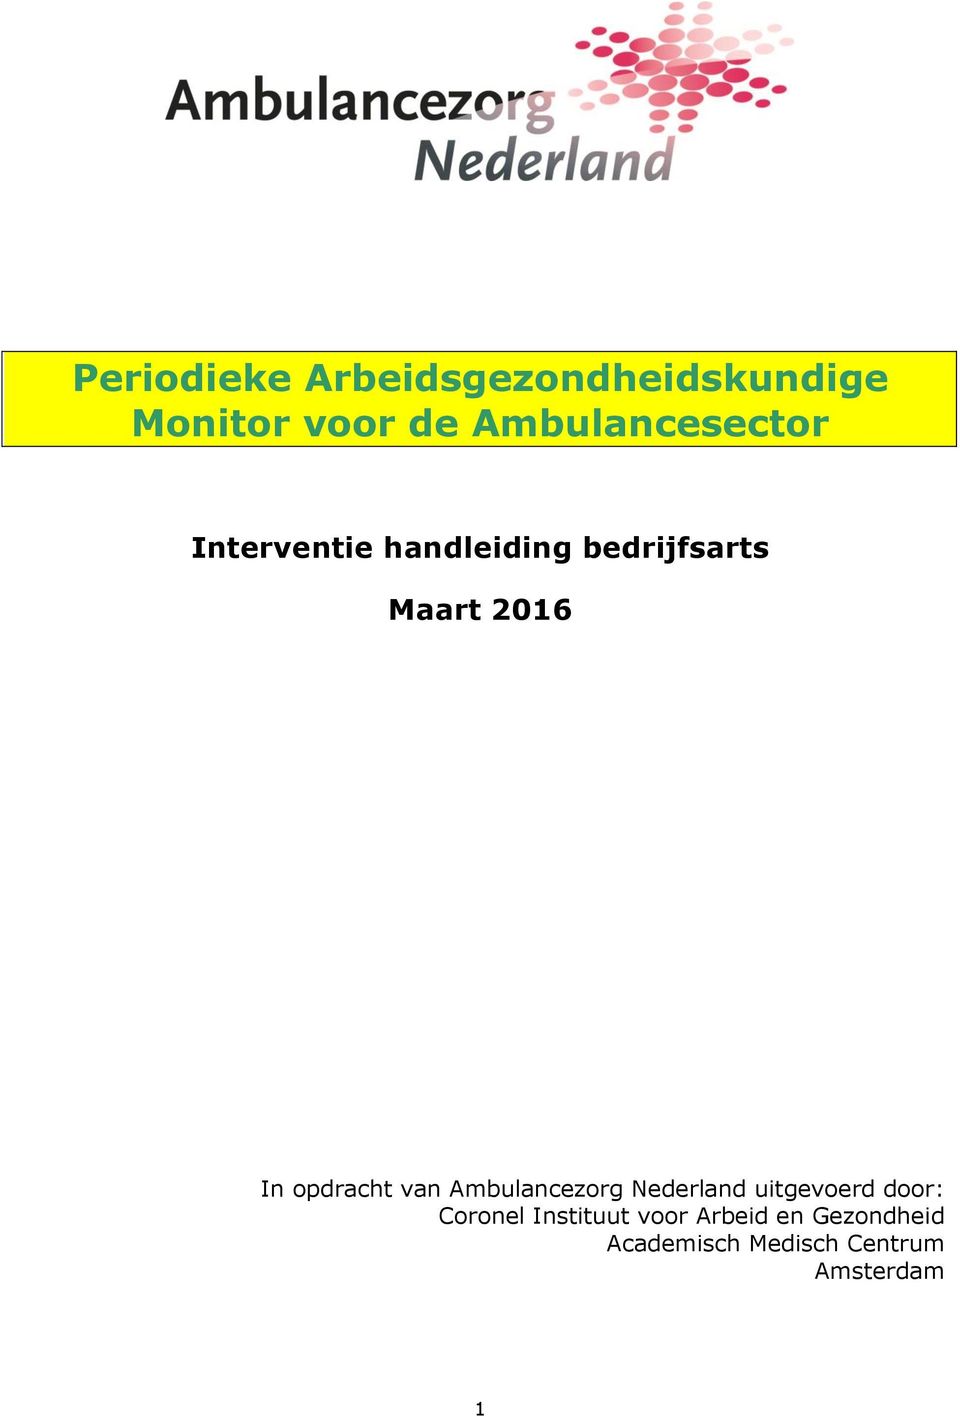 In opdracht van Ambulancezorg Nederland uitgevoerd door: